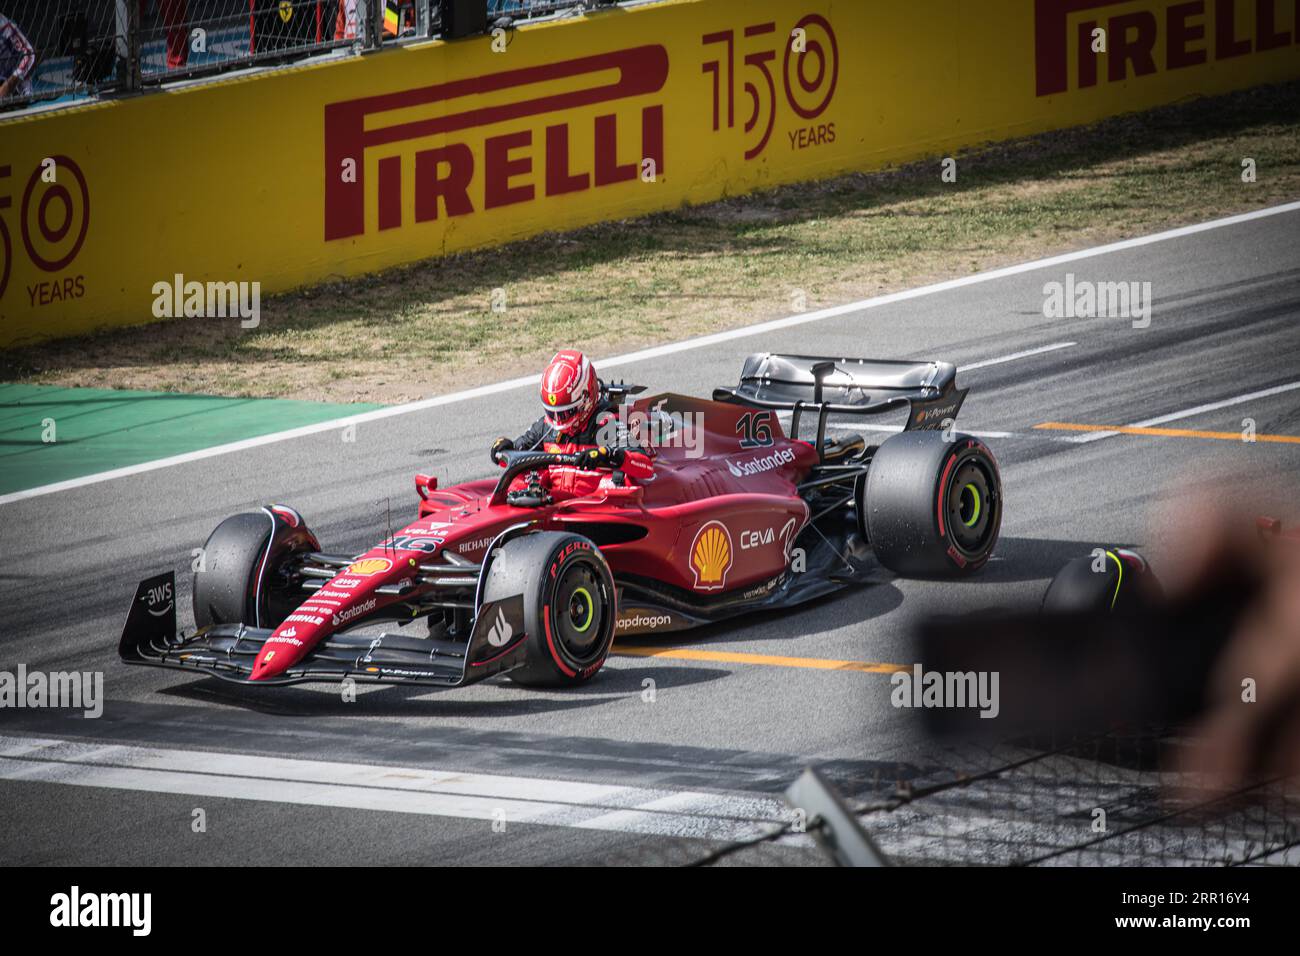 Charles Leclerc è colto nel momento in cui si prepara a uscire dalla sua Ferrari, avendo conquistato il primo posto nella sessione di qualifica. Foto Stock